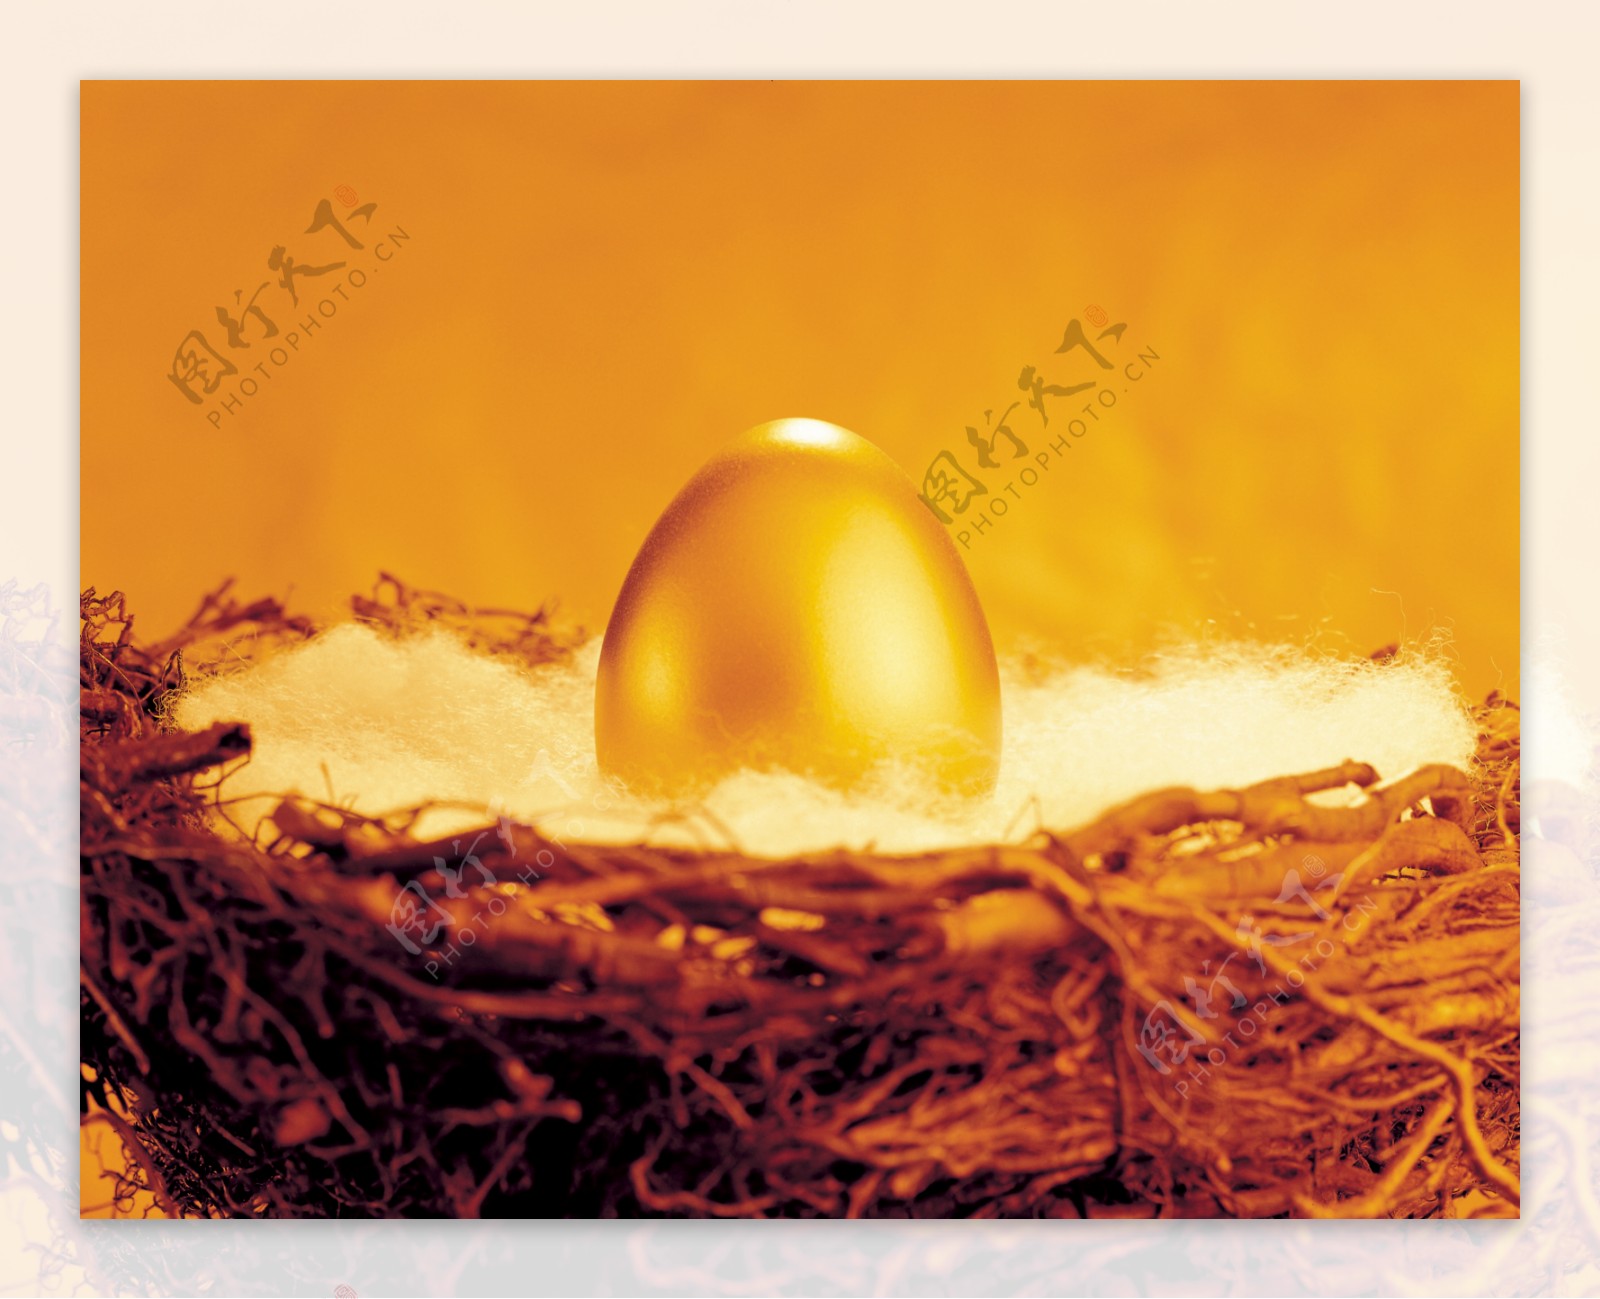 鸟巢中一颗漂亮的金蛋